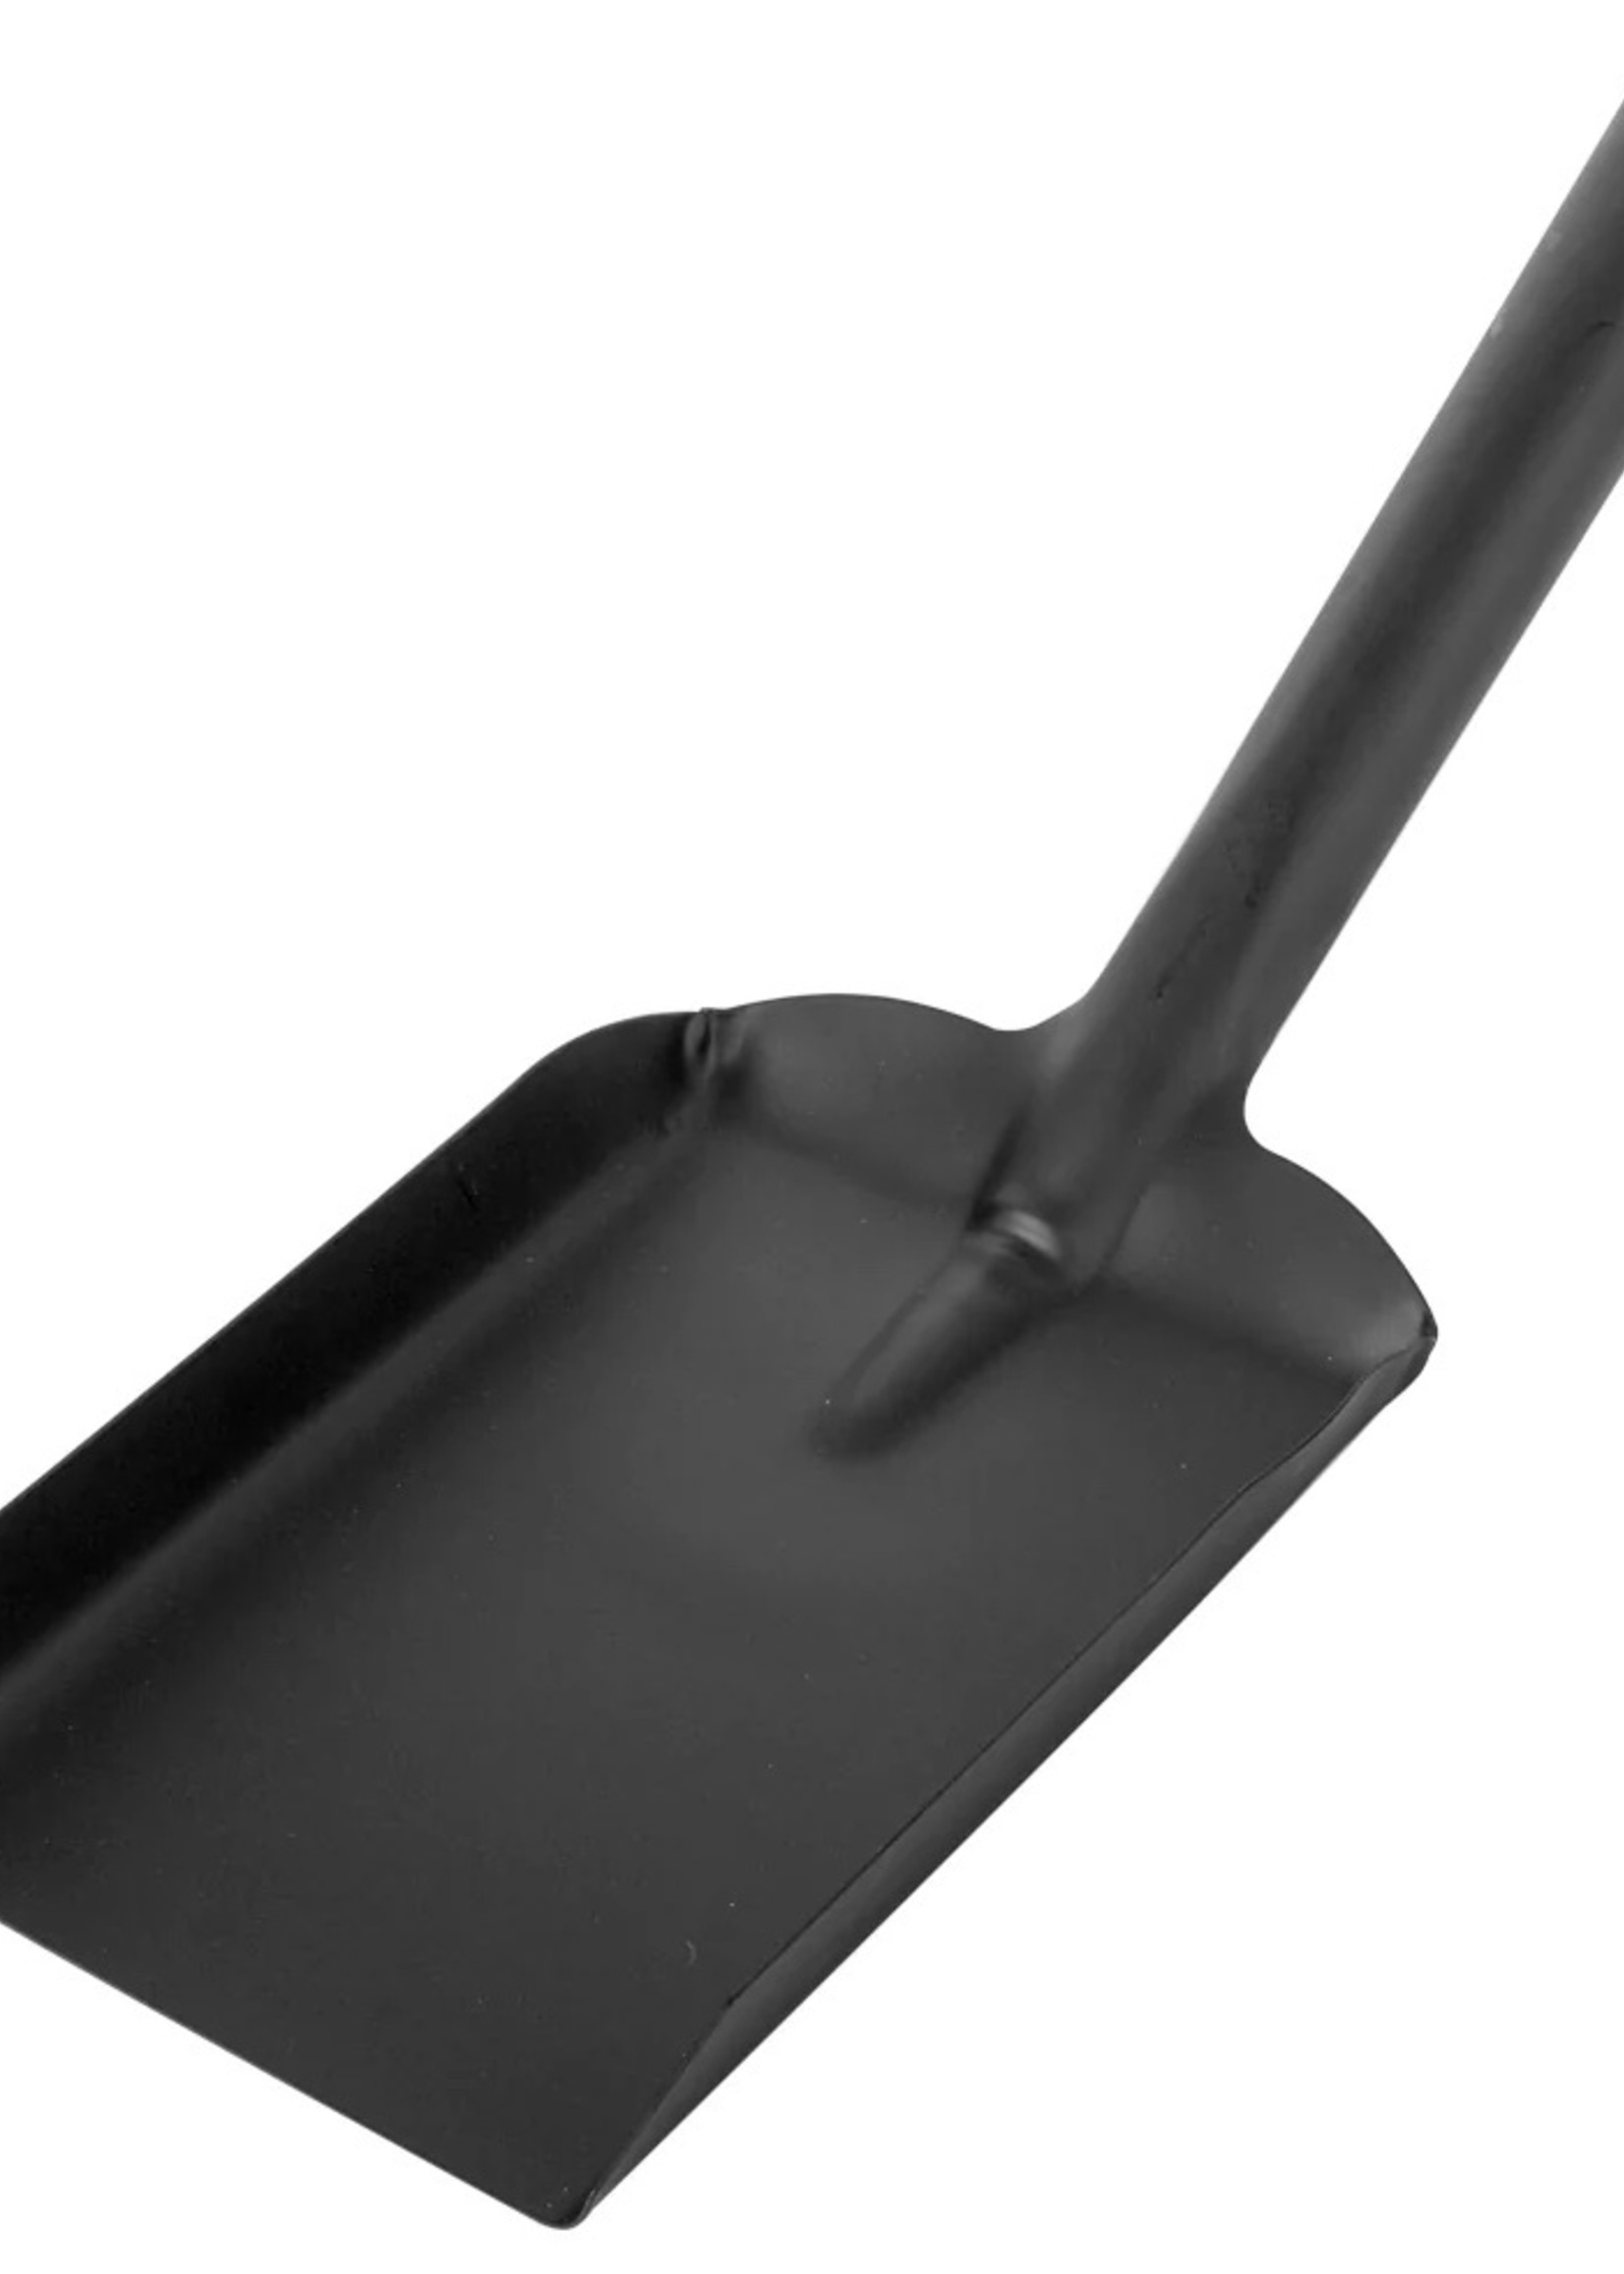 Hearth and Home Metal Coal Shovel 5.5”